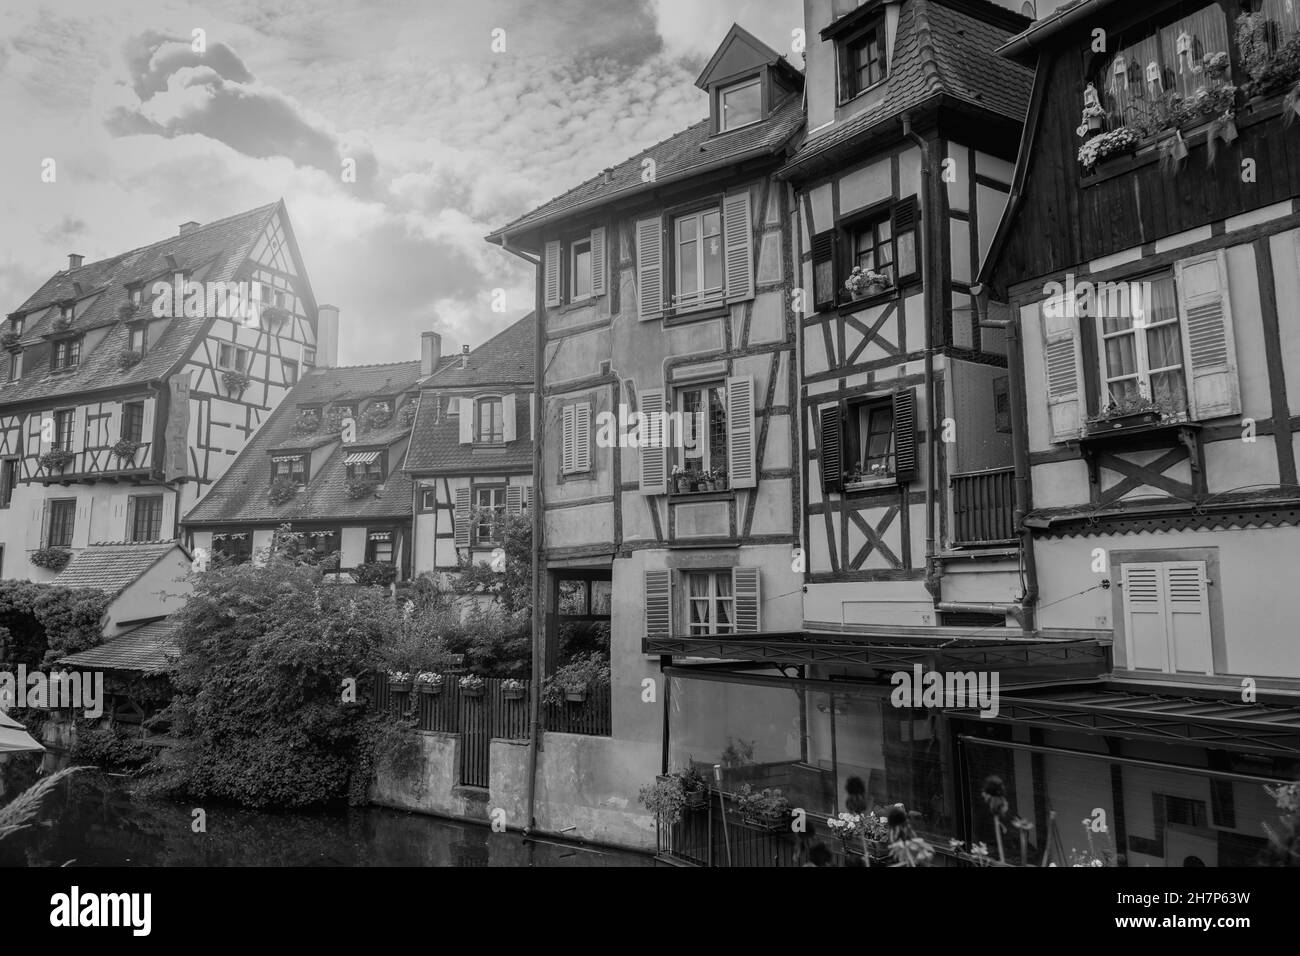 Berühmte Colmar Stadtansicht mit Little venice Wasserkanal traditionelle Fachwerkhäuser im Elsass, Frankreich.Touristenziel in Frankreich.Schwarz und w Stockfoto